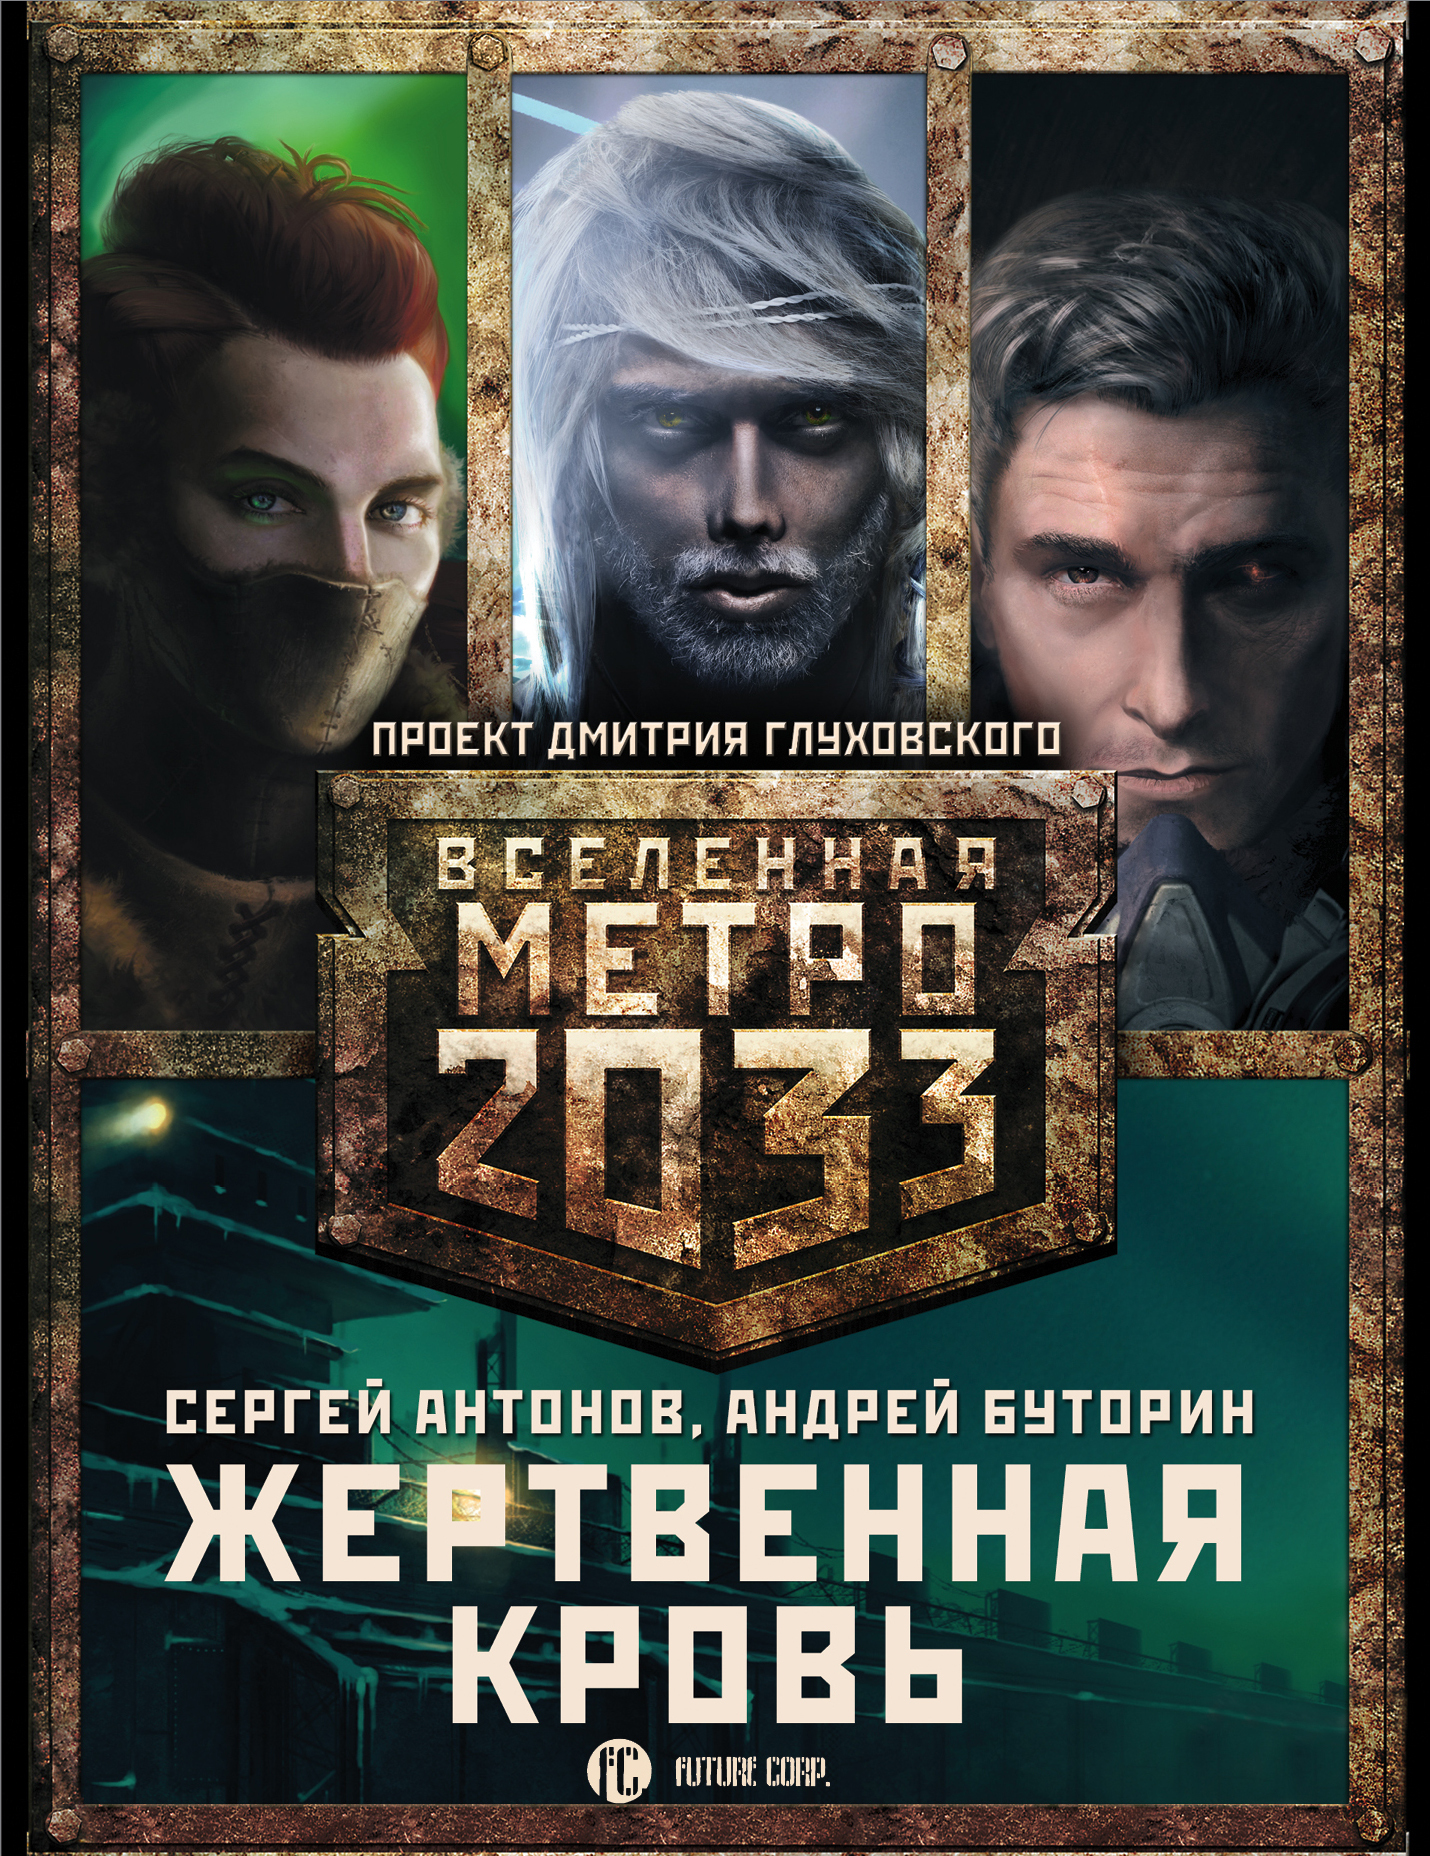 Вселенная метро 2033 проект Дмитрия Глуховского.